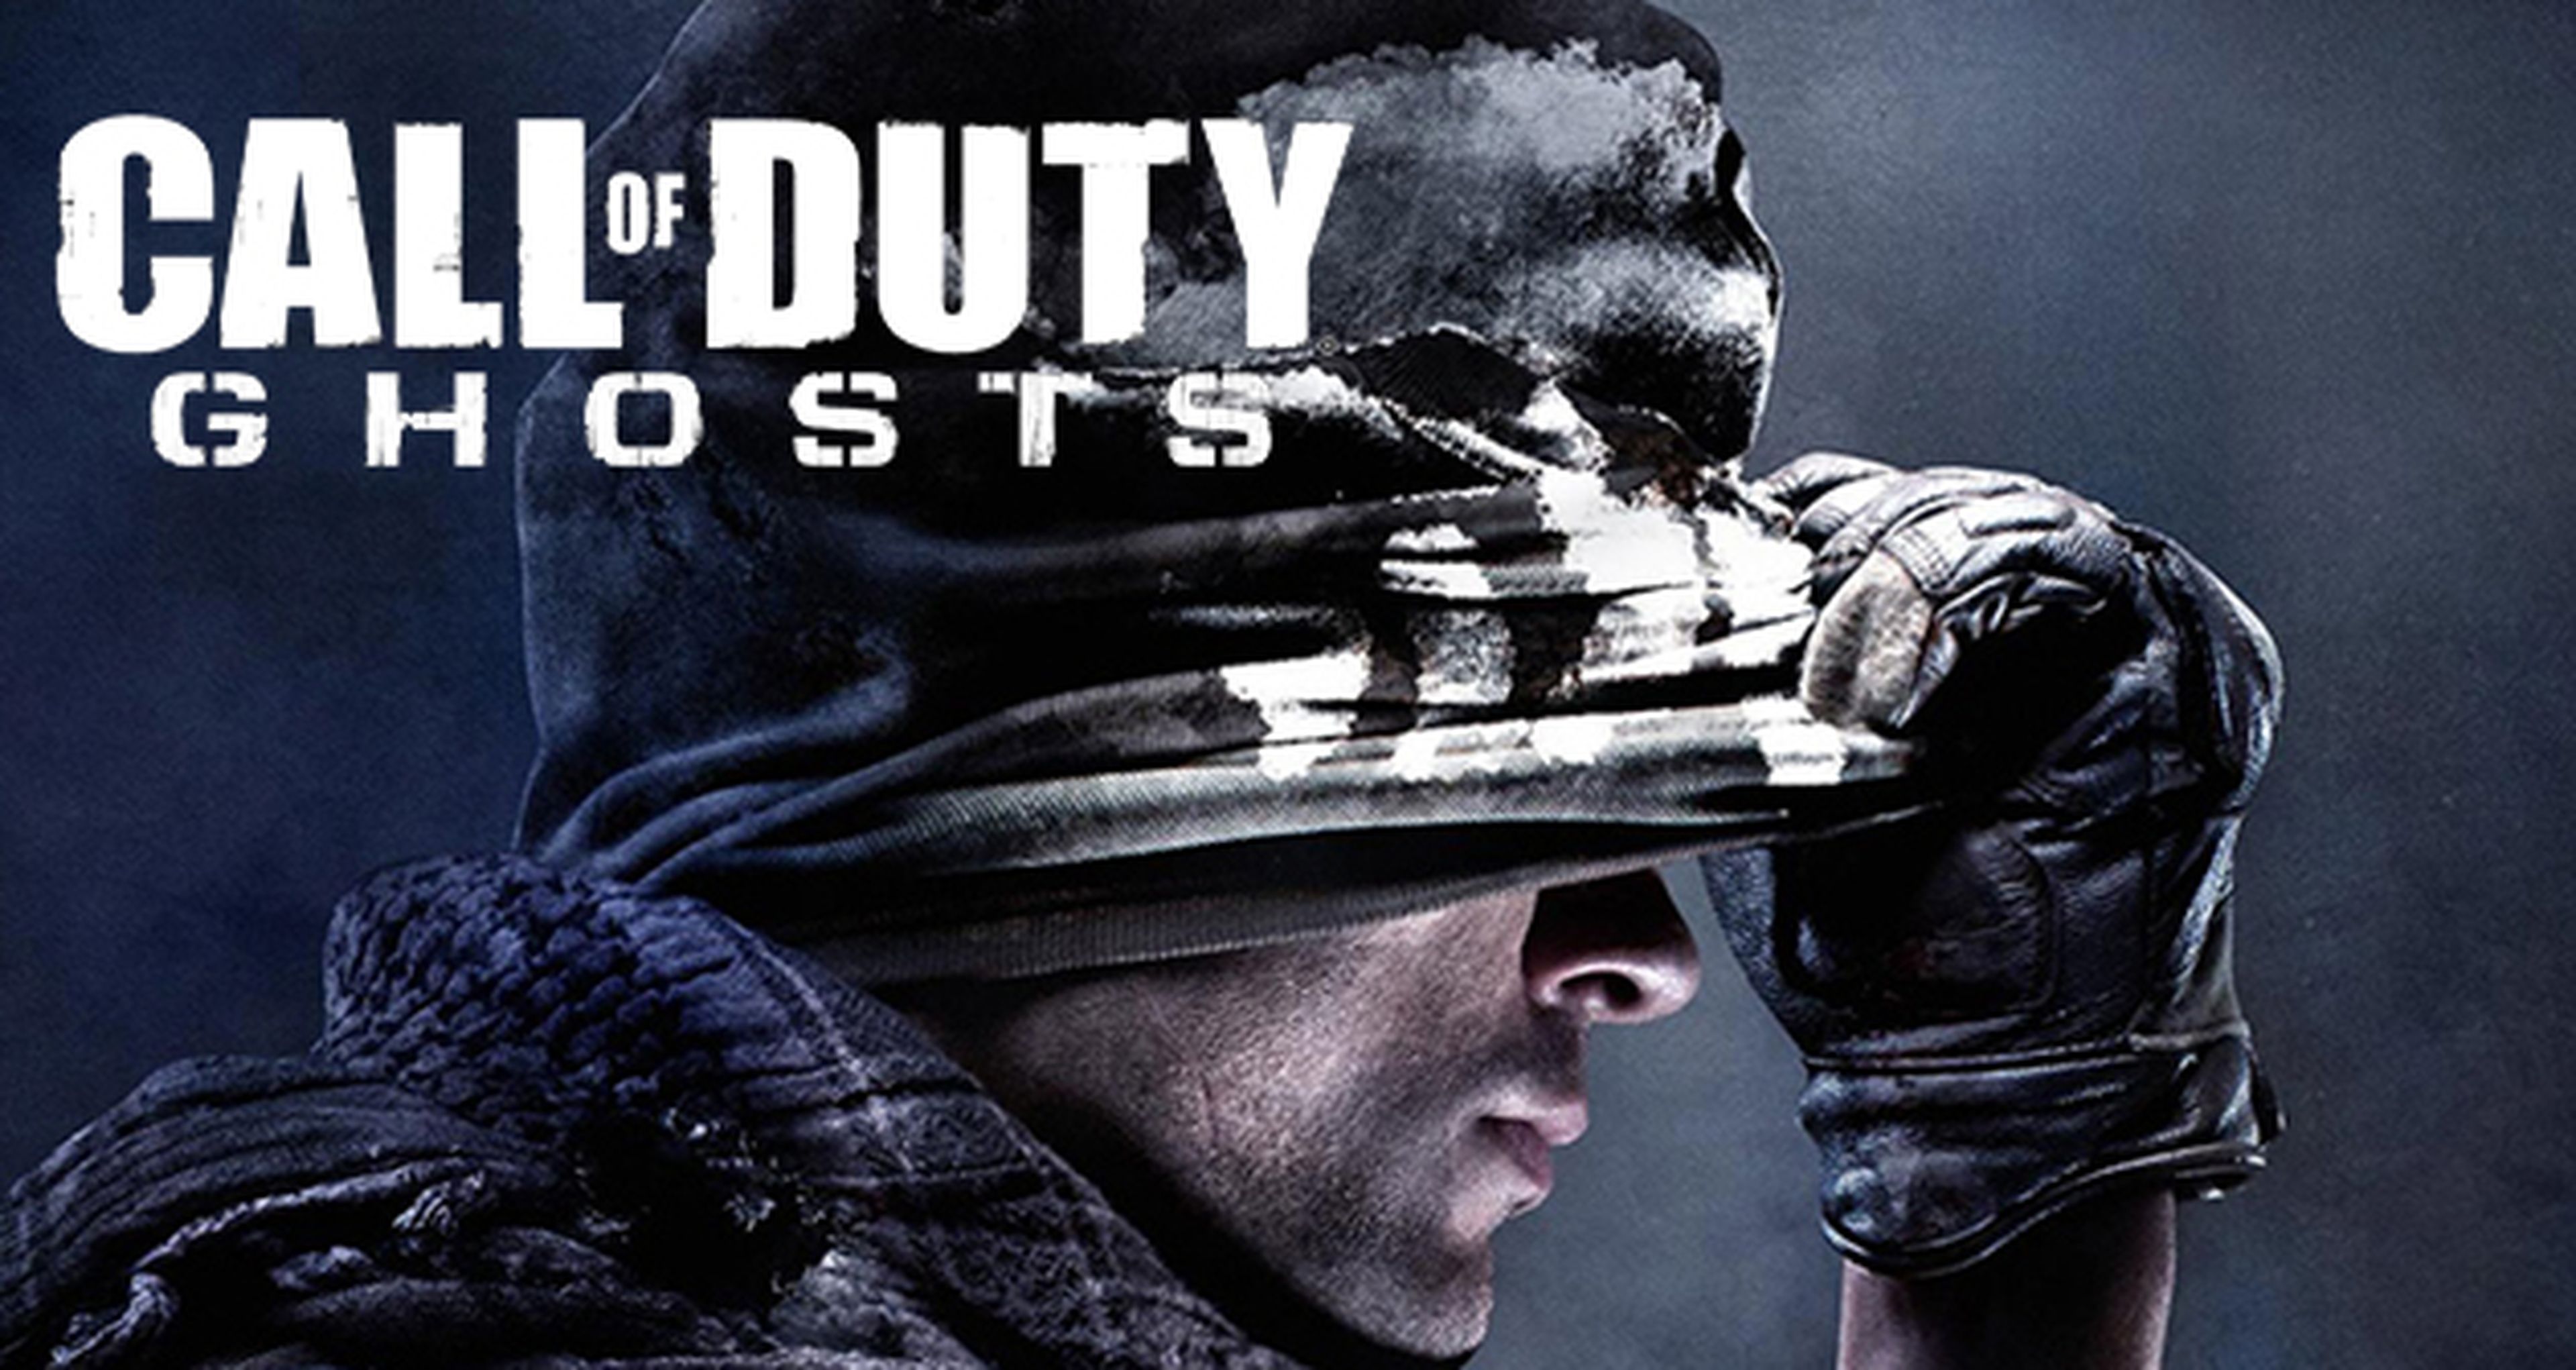 Avance de Call of Duty Ghosts